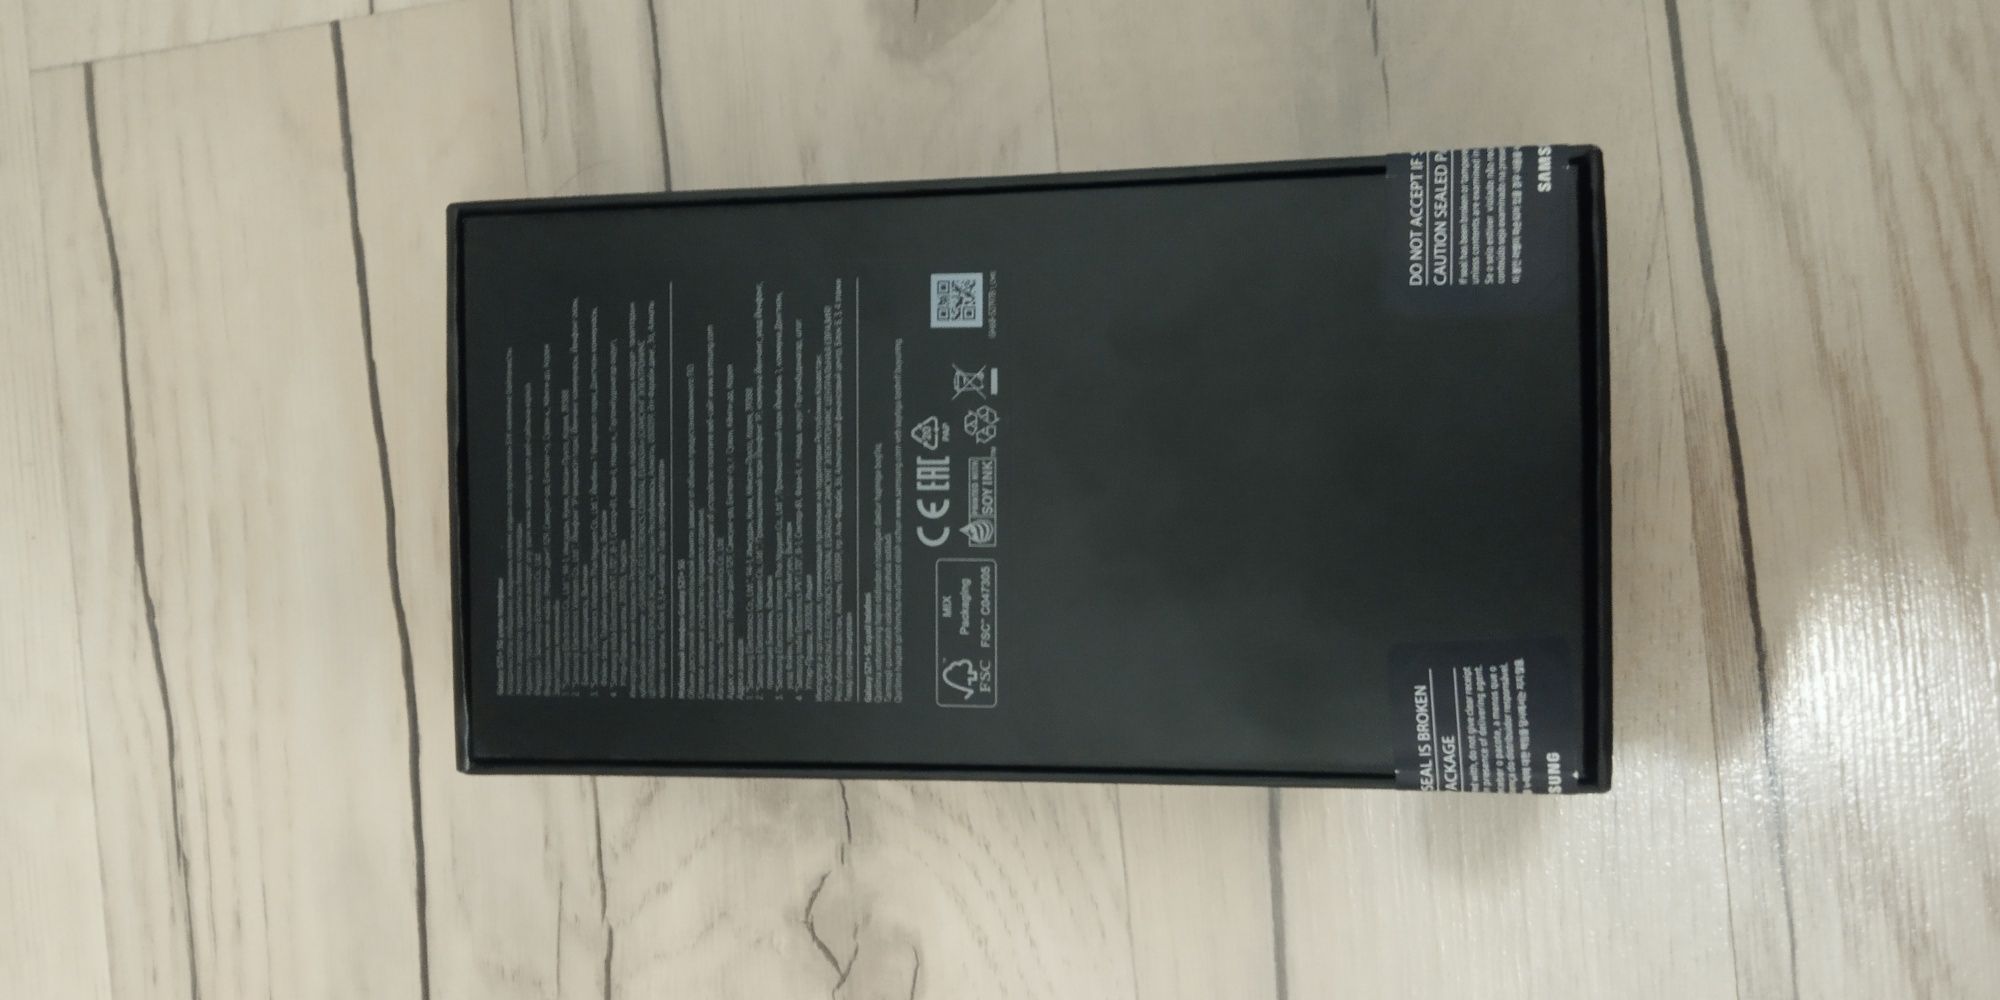 Продам Samsung s21 plus (S21+) 256Gb